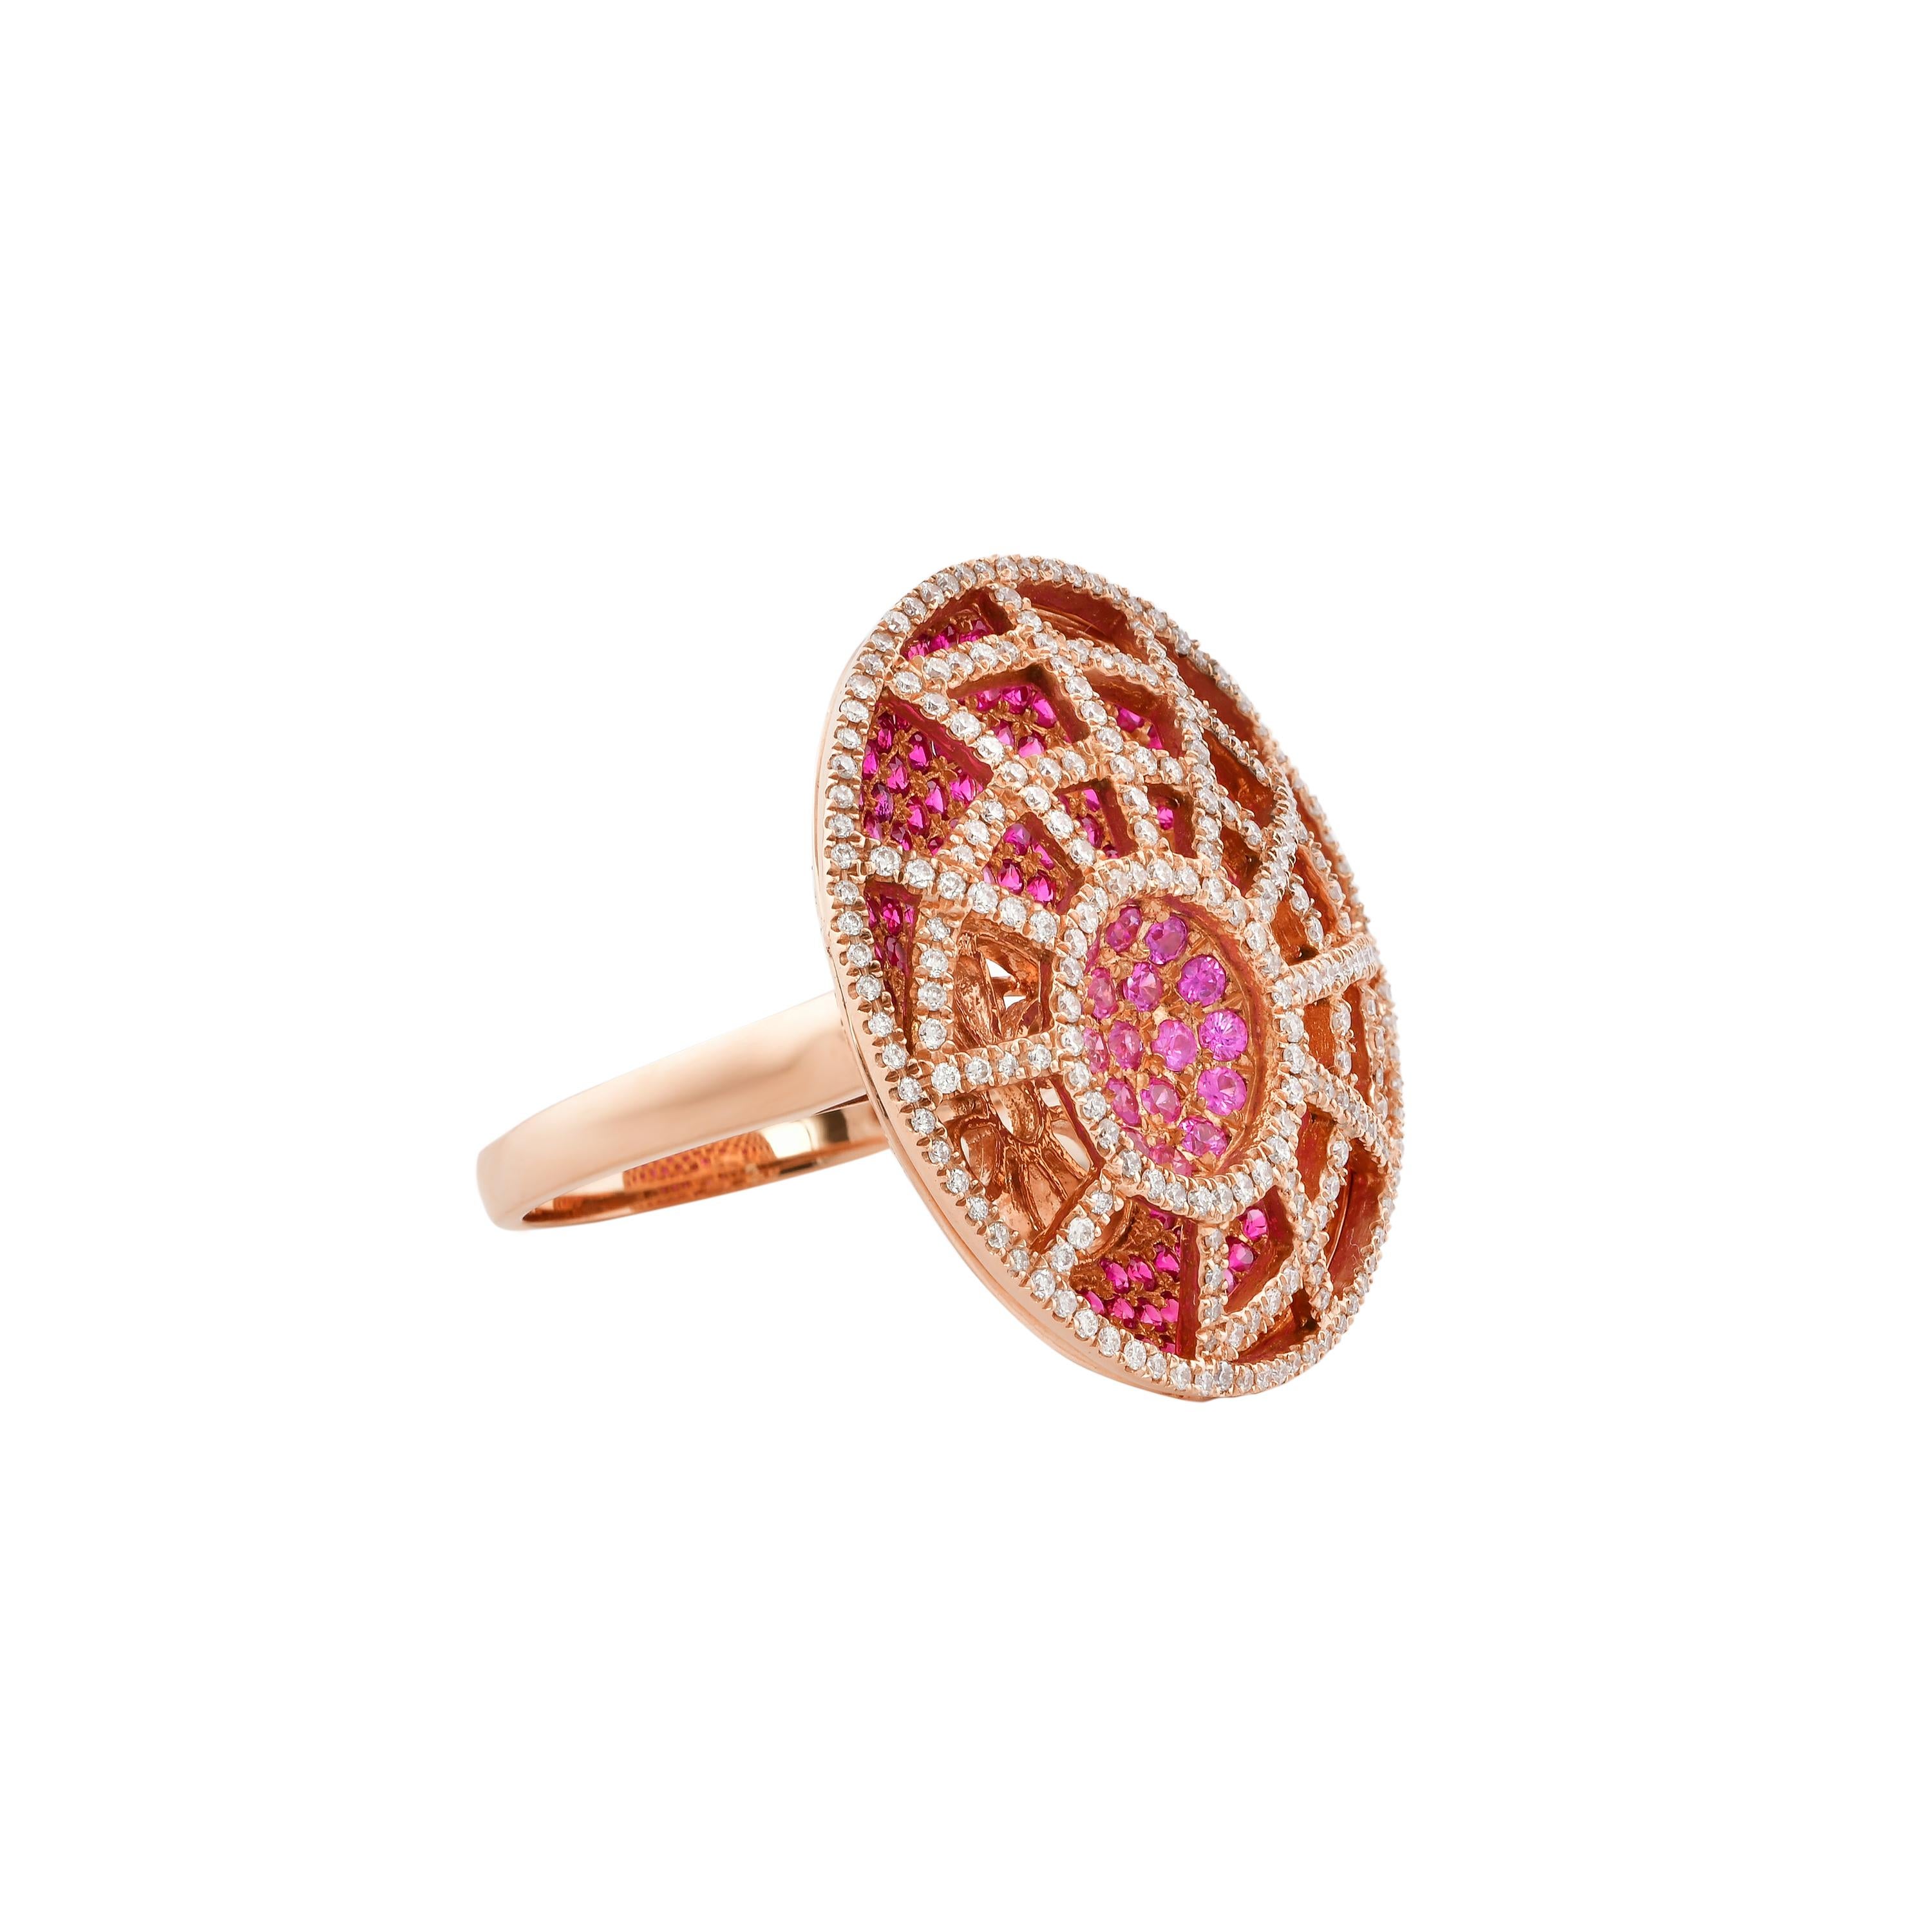 Glamorous Gemstones - Sunita Nahata begann ihre Karriere als Edelsteinhändlerin, und diese besondere Kollektion spiegelt ihre Liebe zu vielfarbigen Halbedelsteinen wider. Dieser Ring zeigt ein Cluster aus rosa Saphiren, die auf einem Hintergrund aus